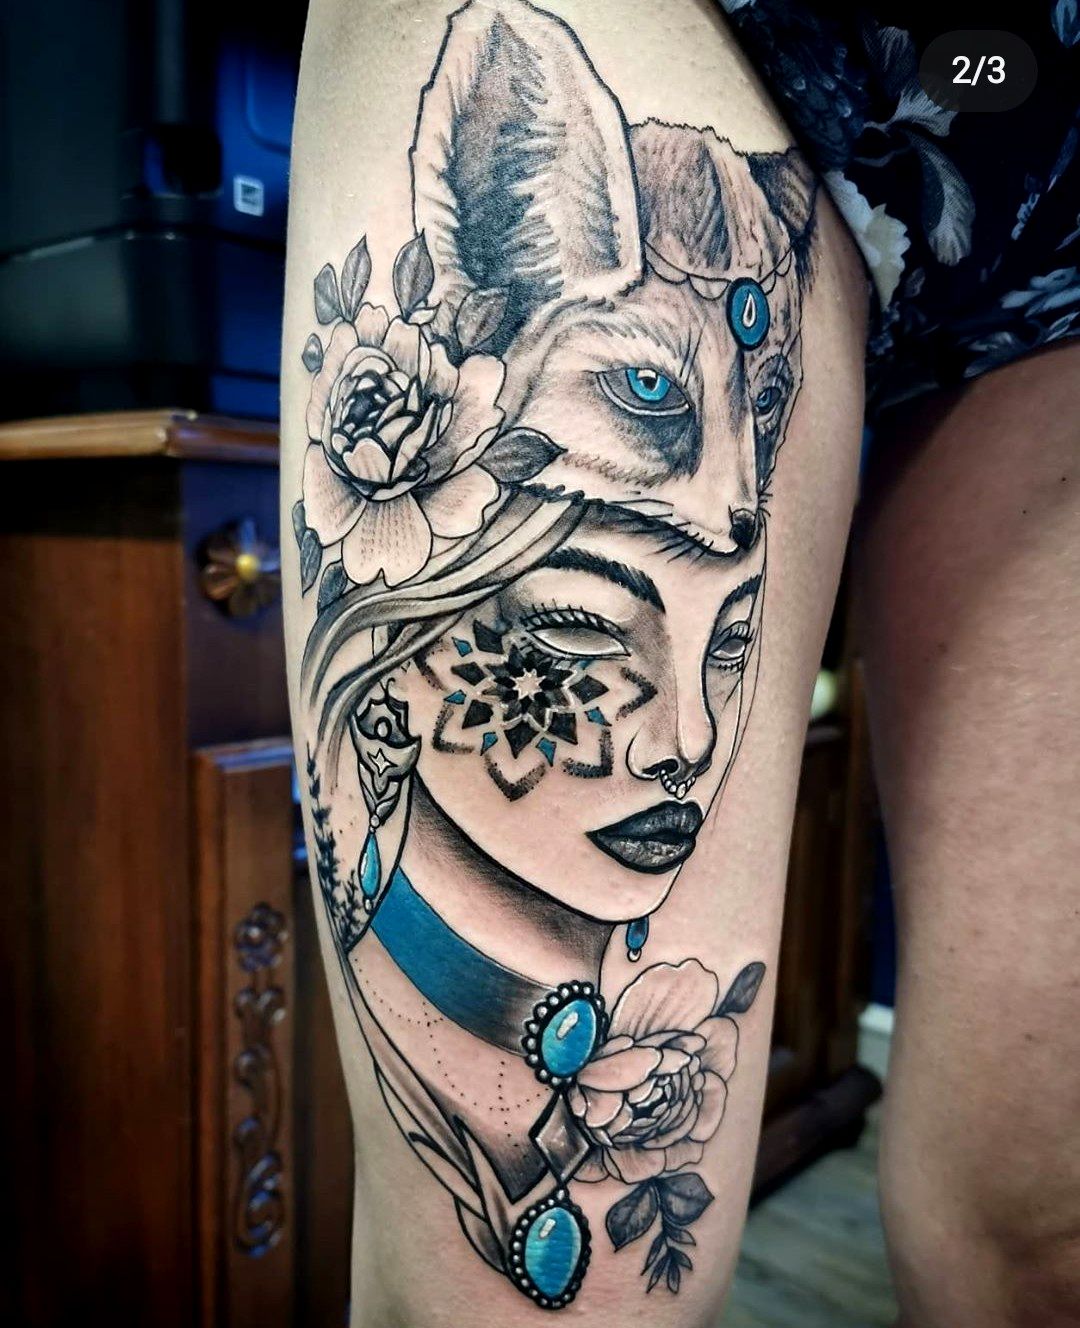 Állat tetoválás, Angyal tetoválás, Comb tetoválás, Fantázia tetoválás, Fekete fehér tetoválás, Portré tetoválás, Realisztikus tetoválás, Színes tetoválás